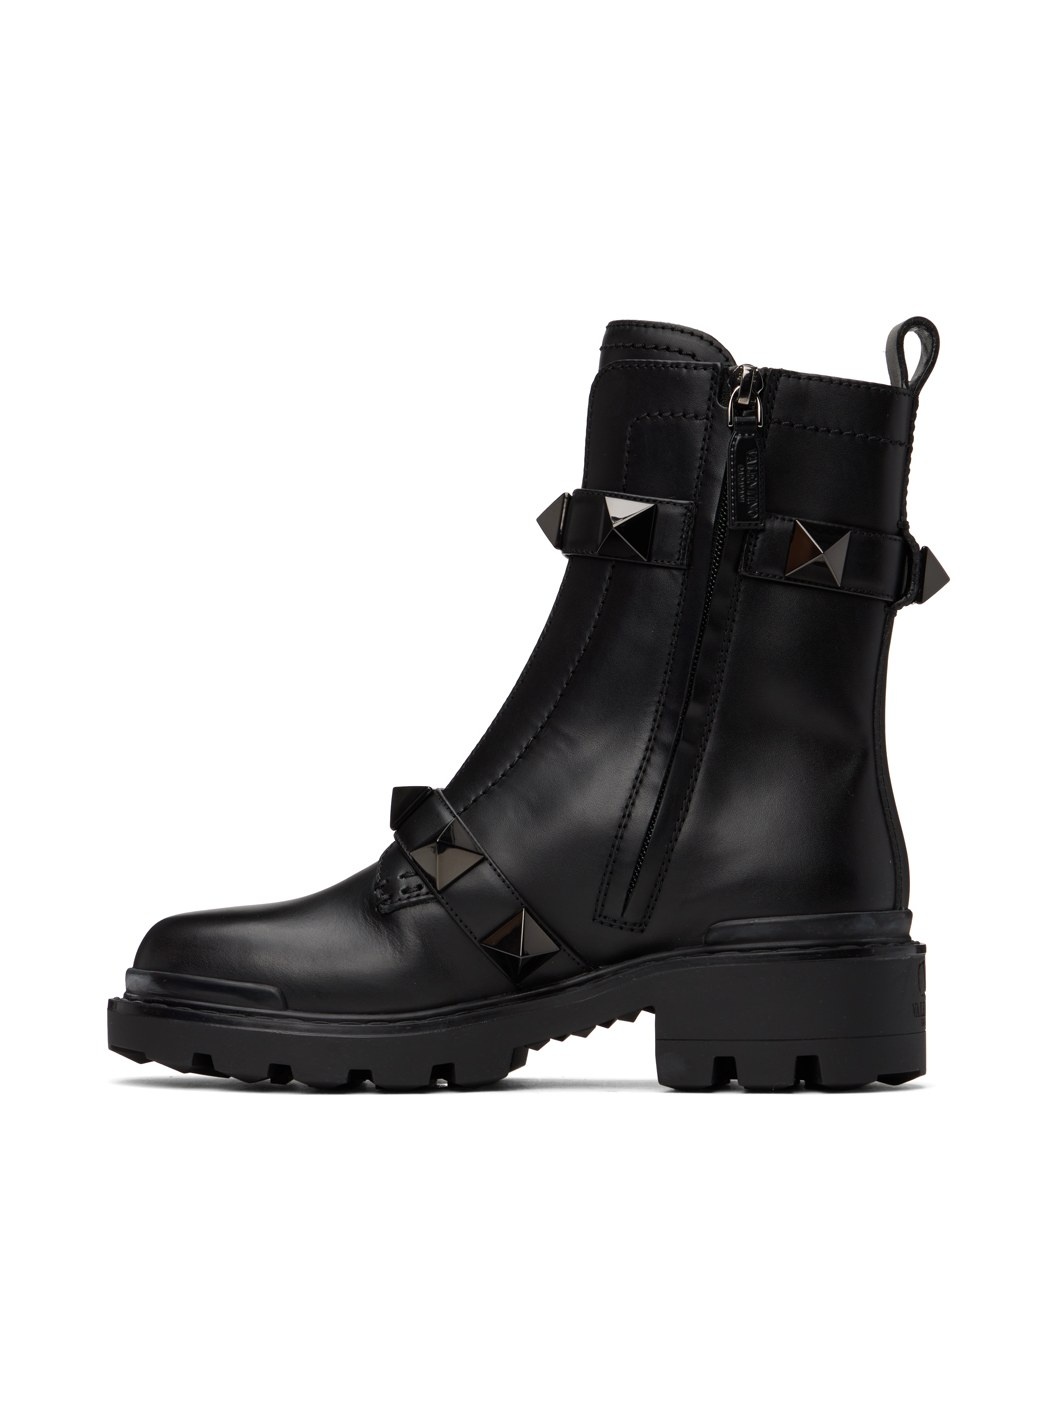 Black Roman Stud Boots - 3